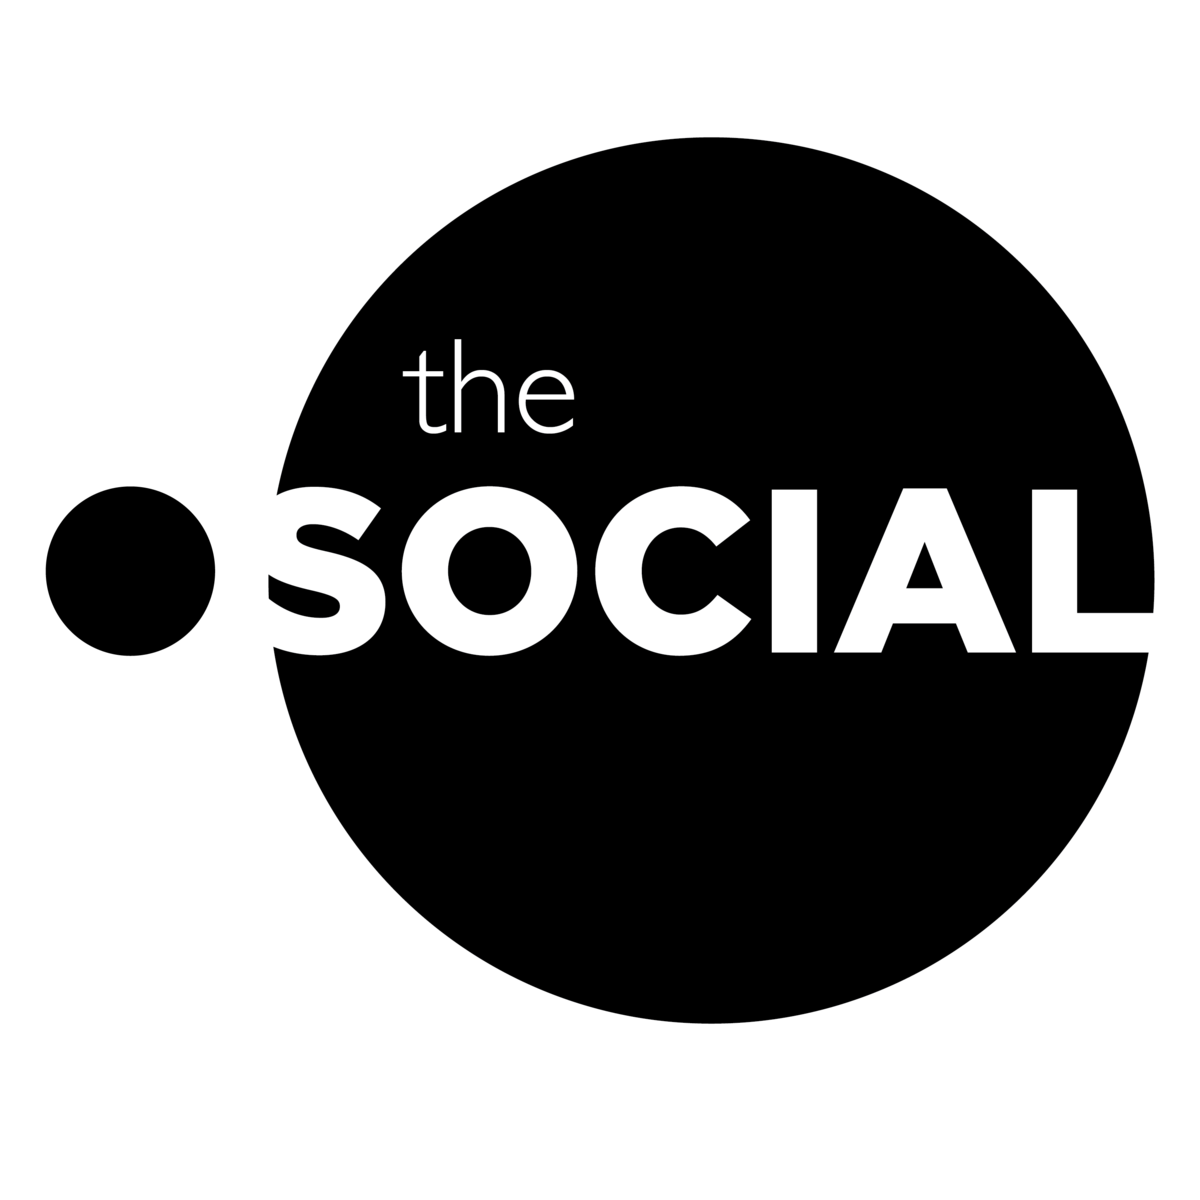 The social logo